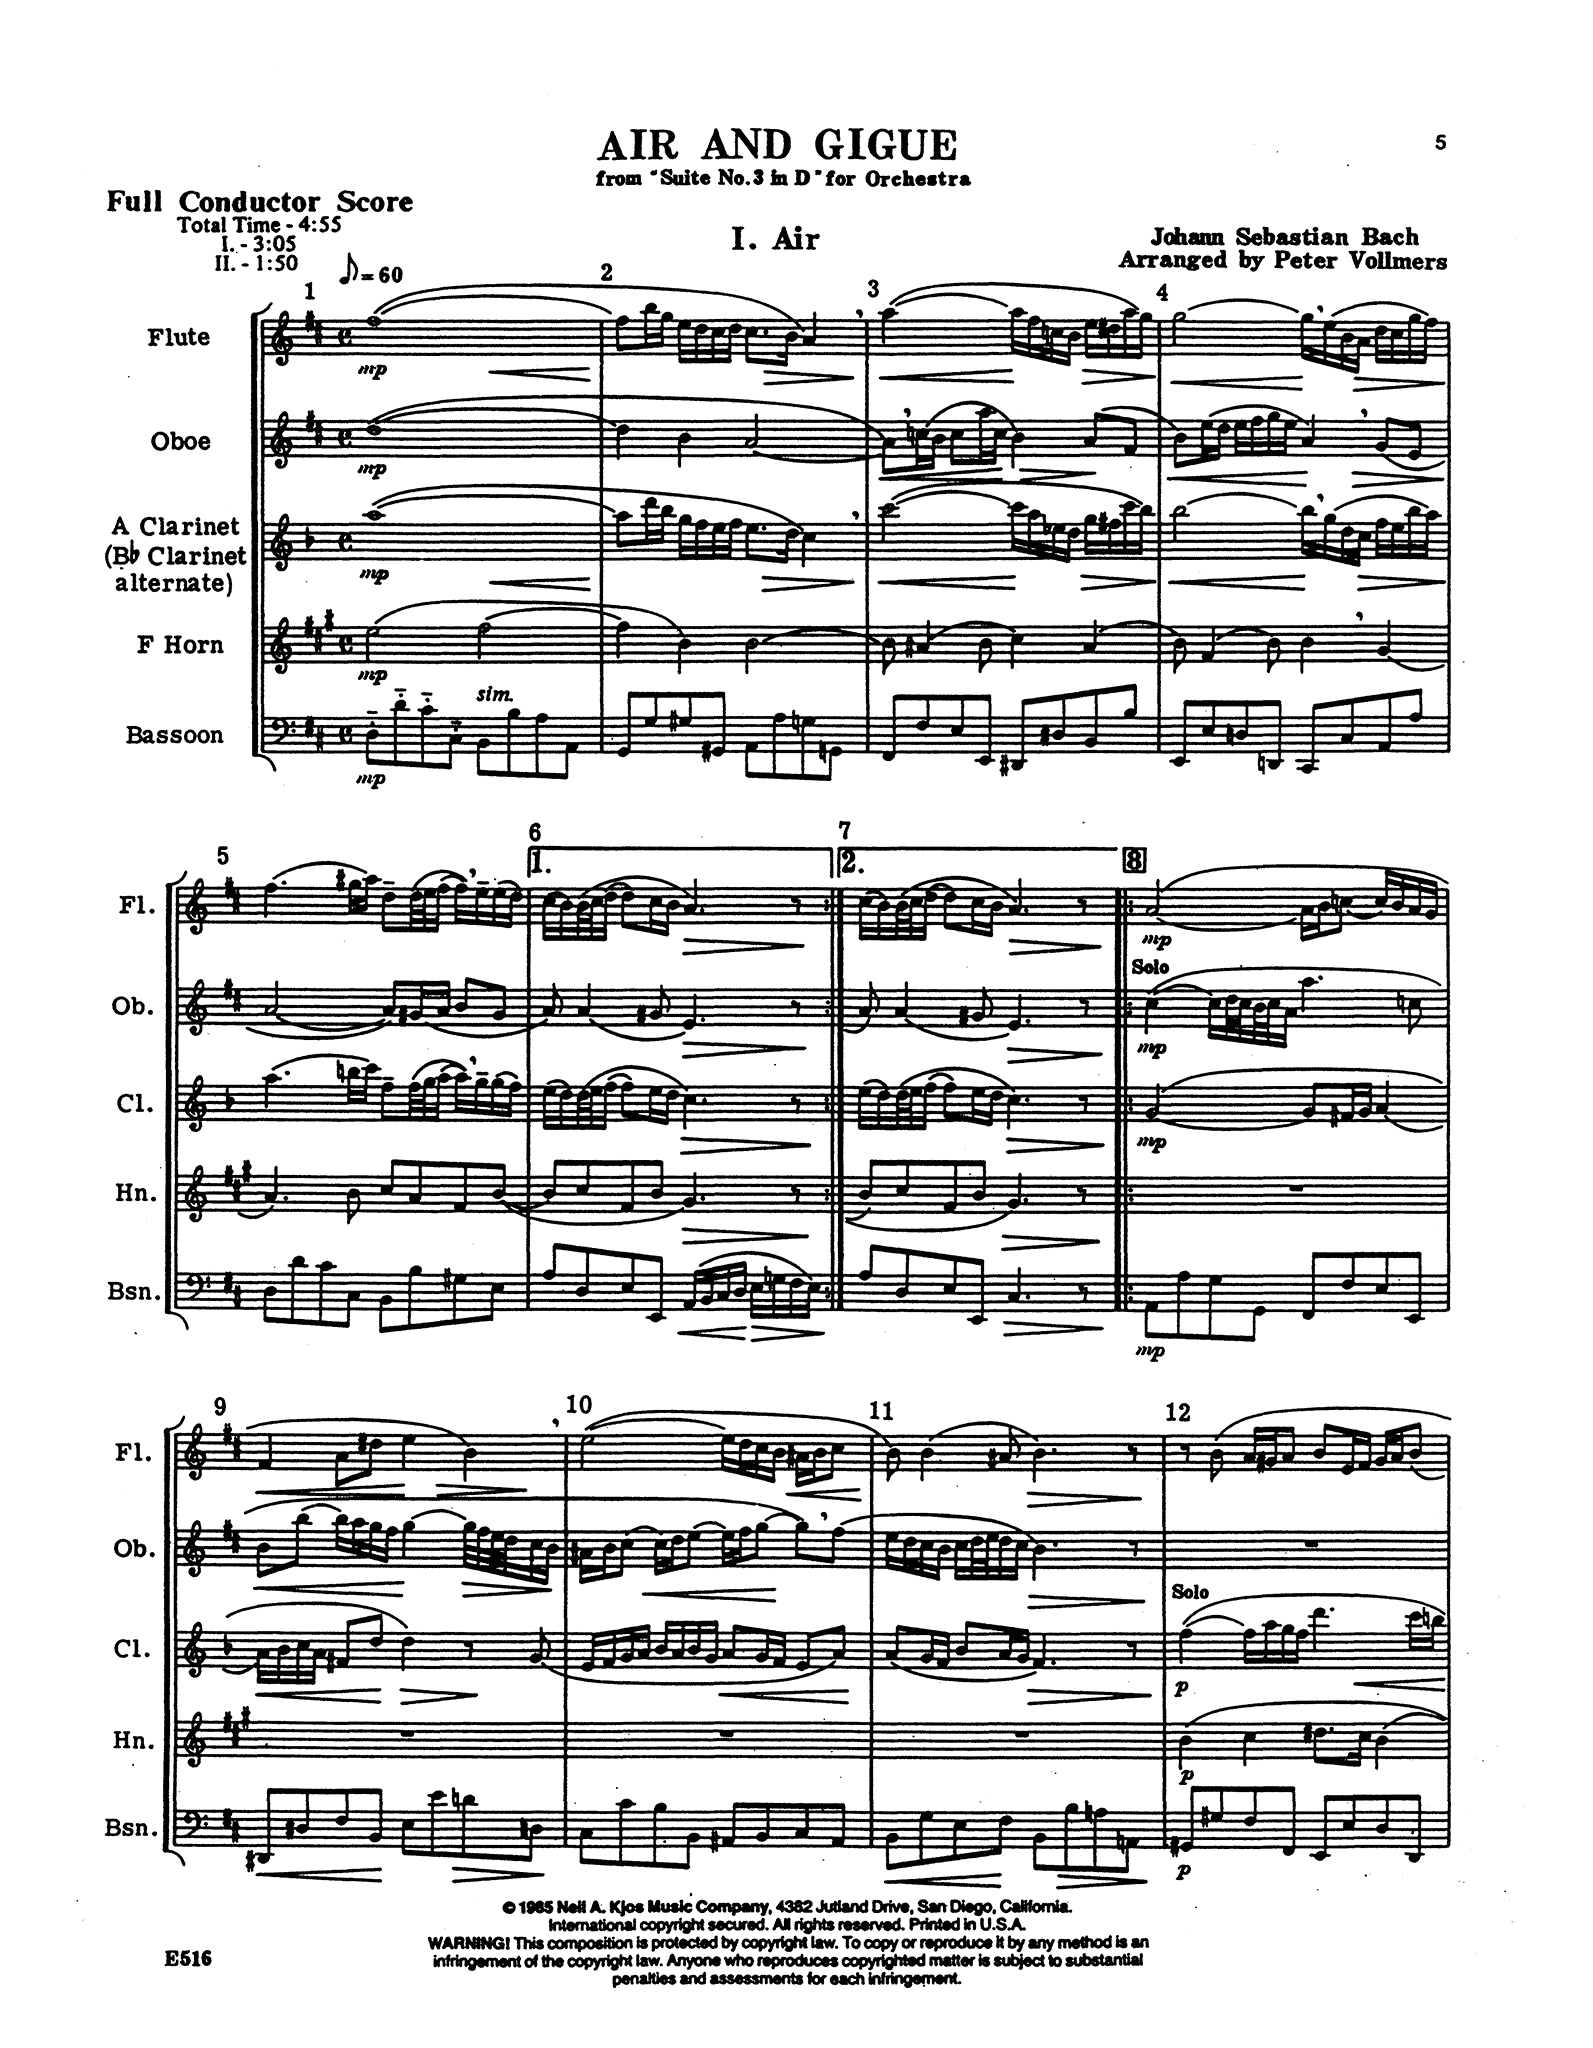 J.S. Bach Air on G String Suite woodwind quintet arrangement - Movement 1